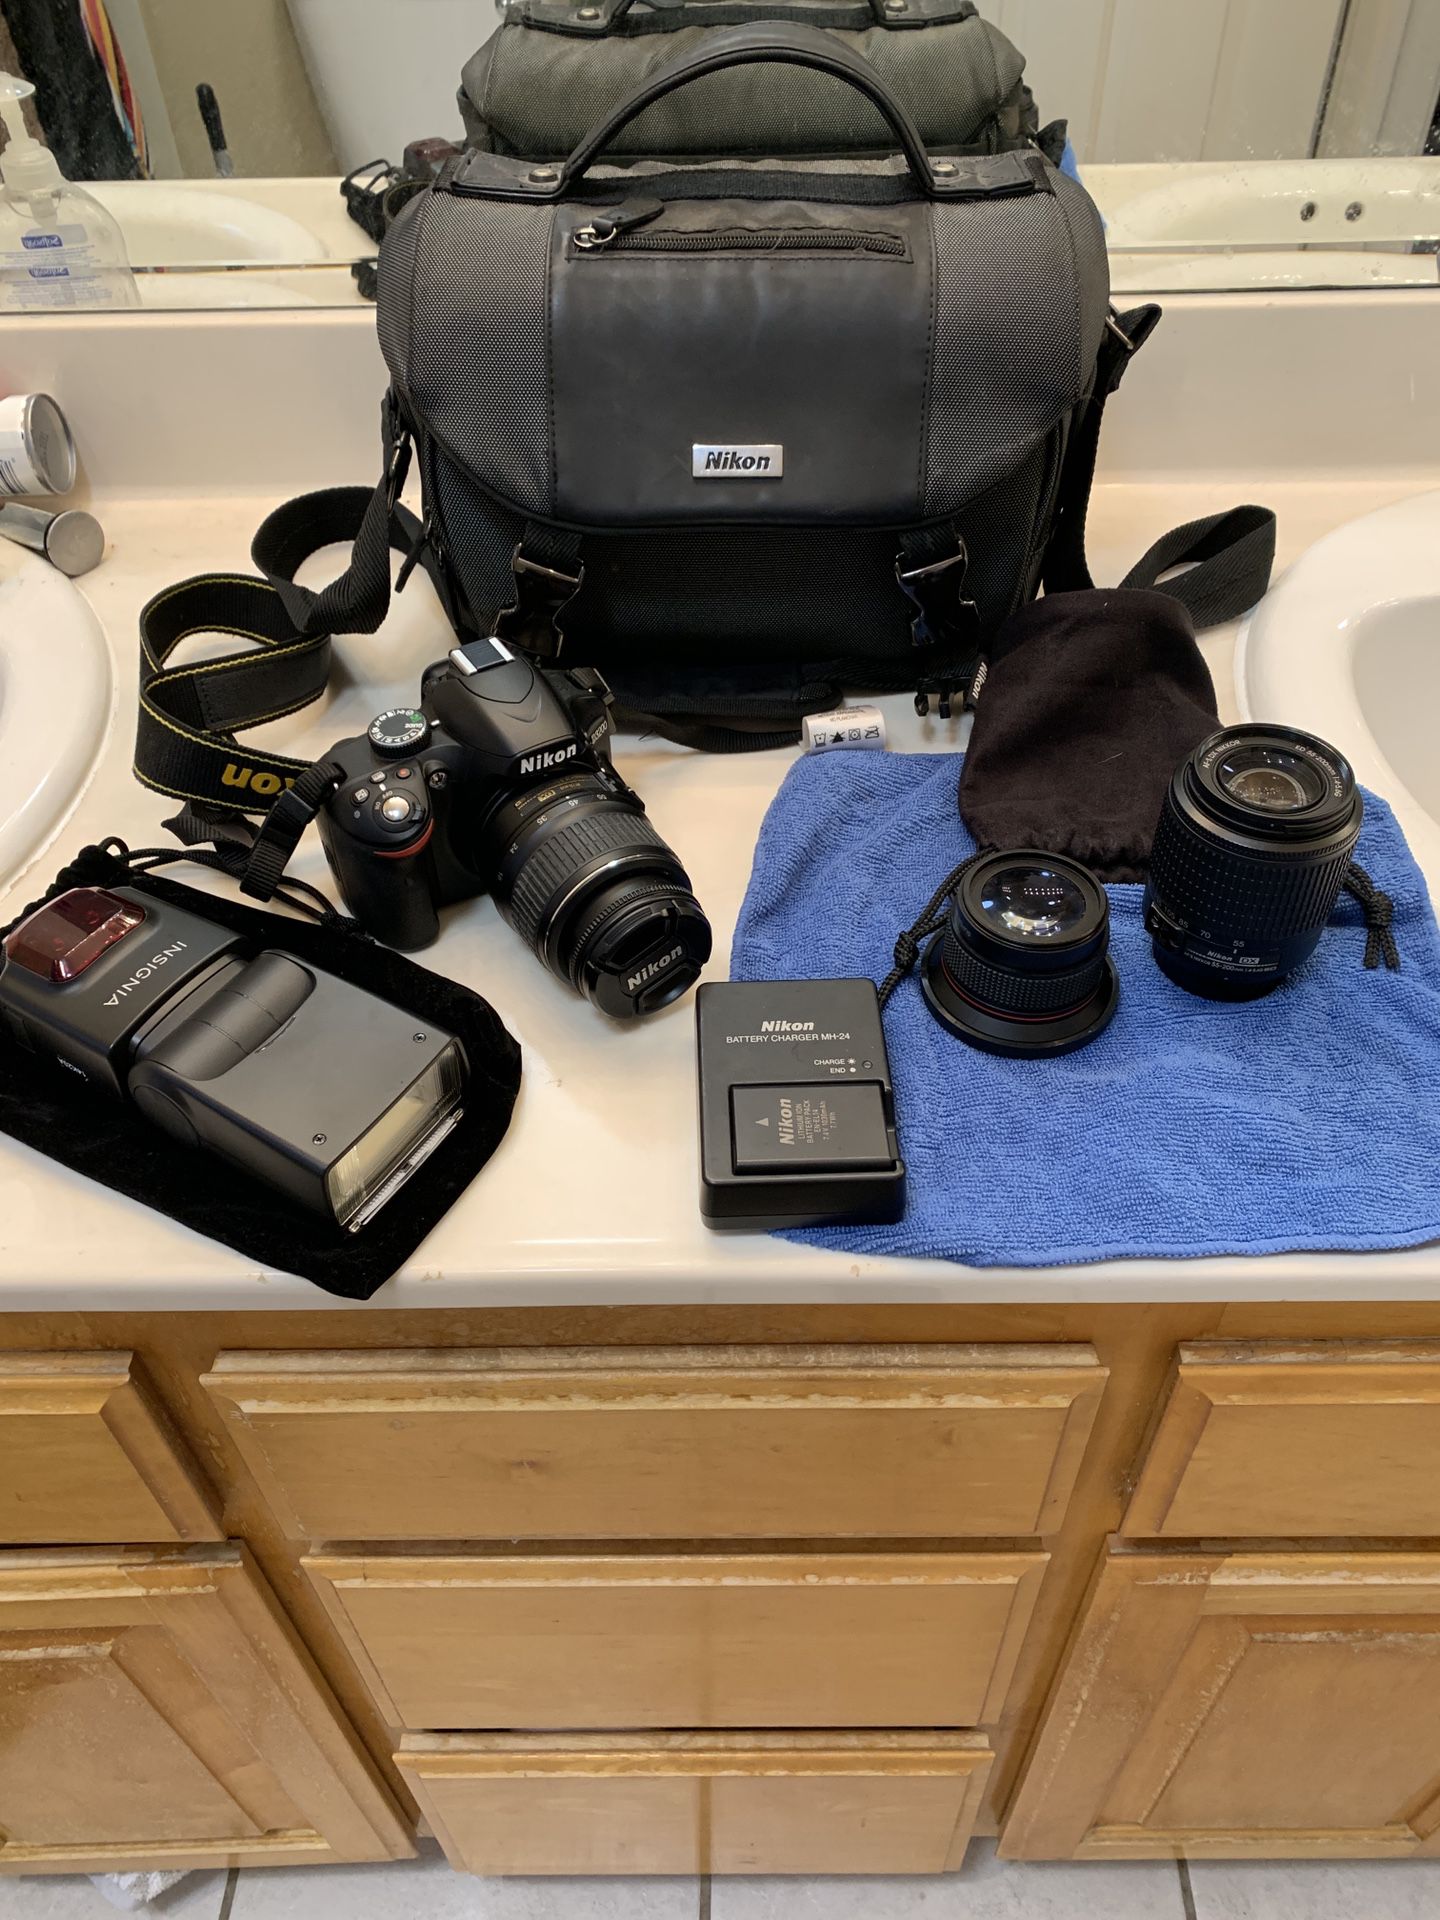 Nikon - D3200 DSLR Camera with AF-P DX 18-55mm G VR and 70-300mm G ED Lenses - Black With Camera Bag